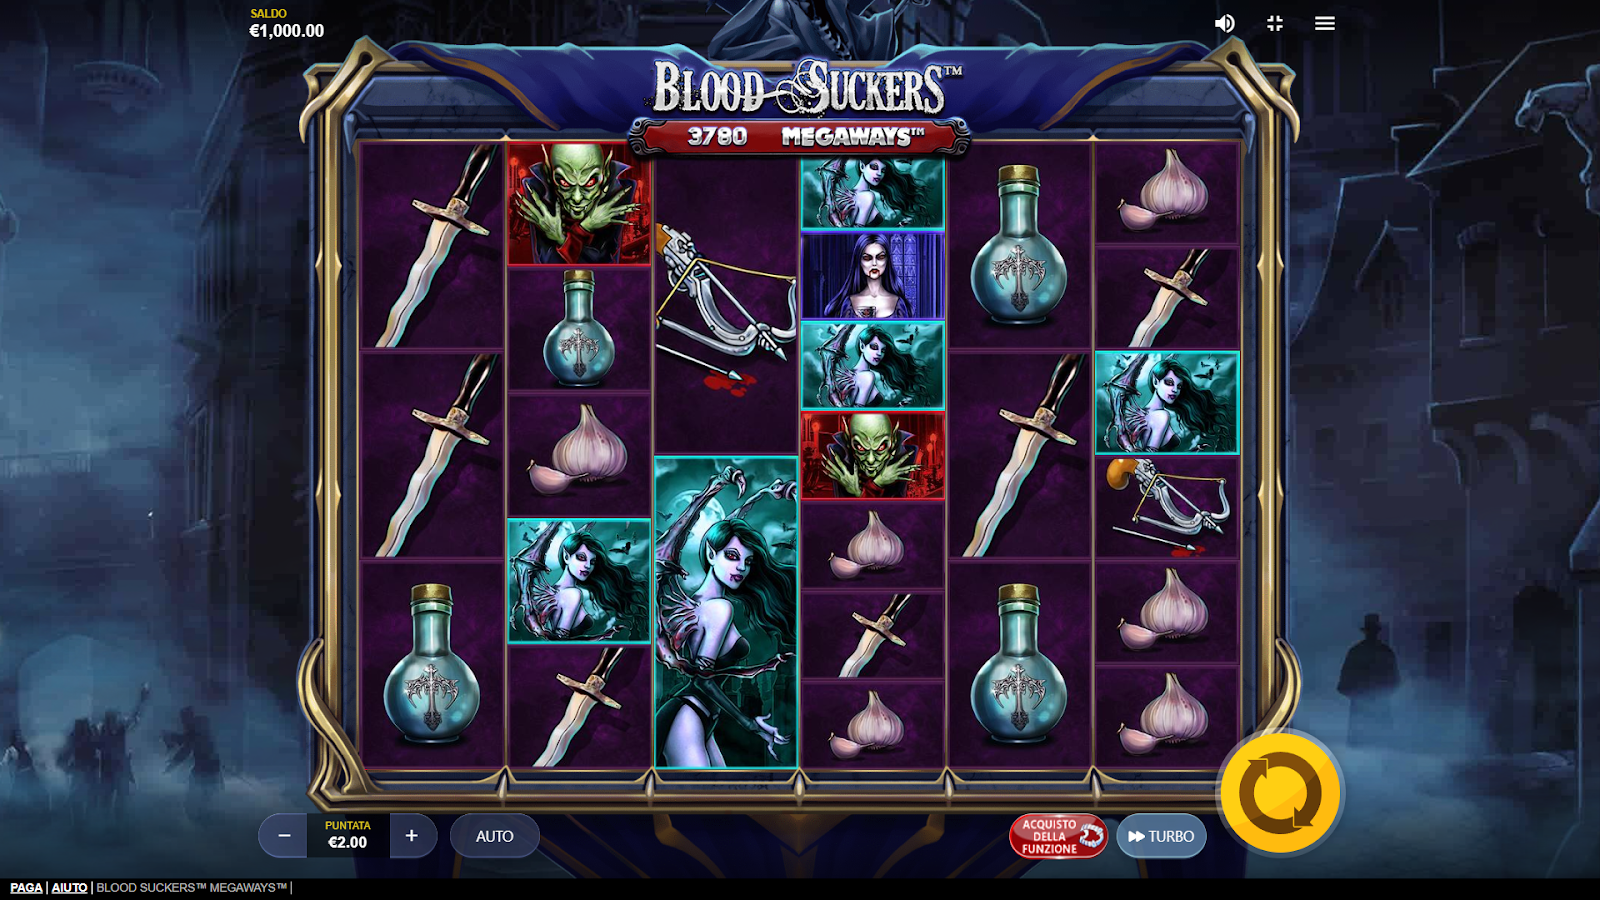 Blood Sakers Megaways slot machine